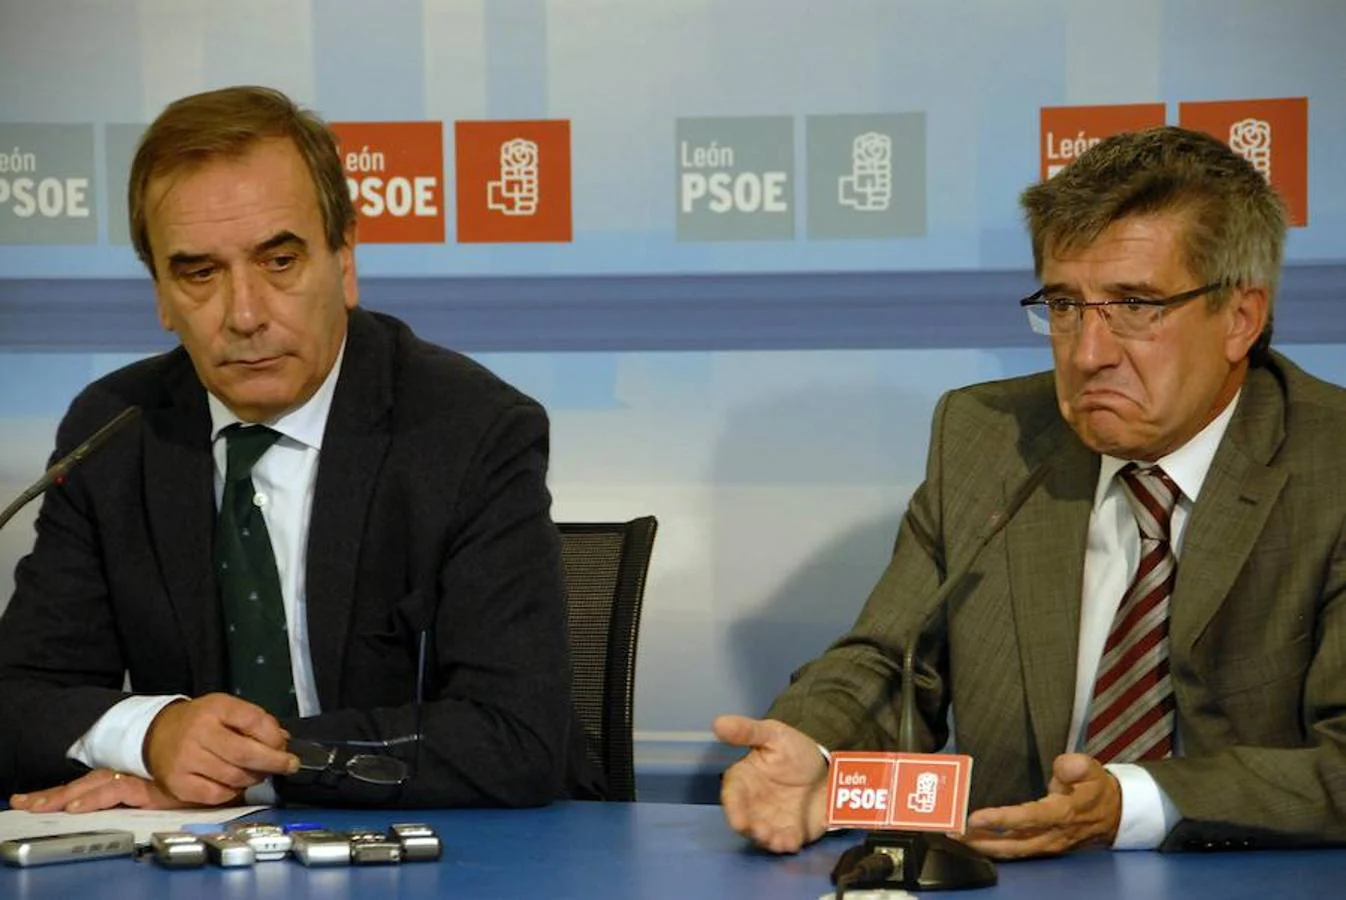 El PSOE de León, su tierra, fue su casa